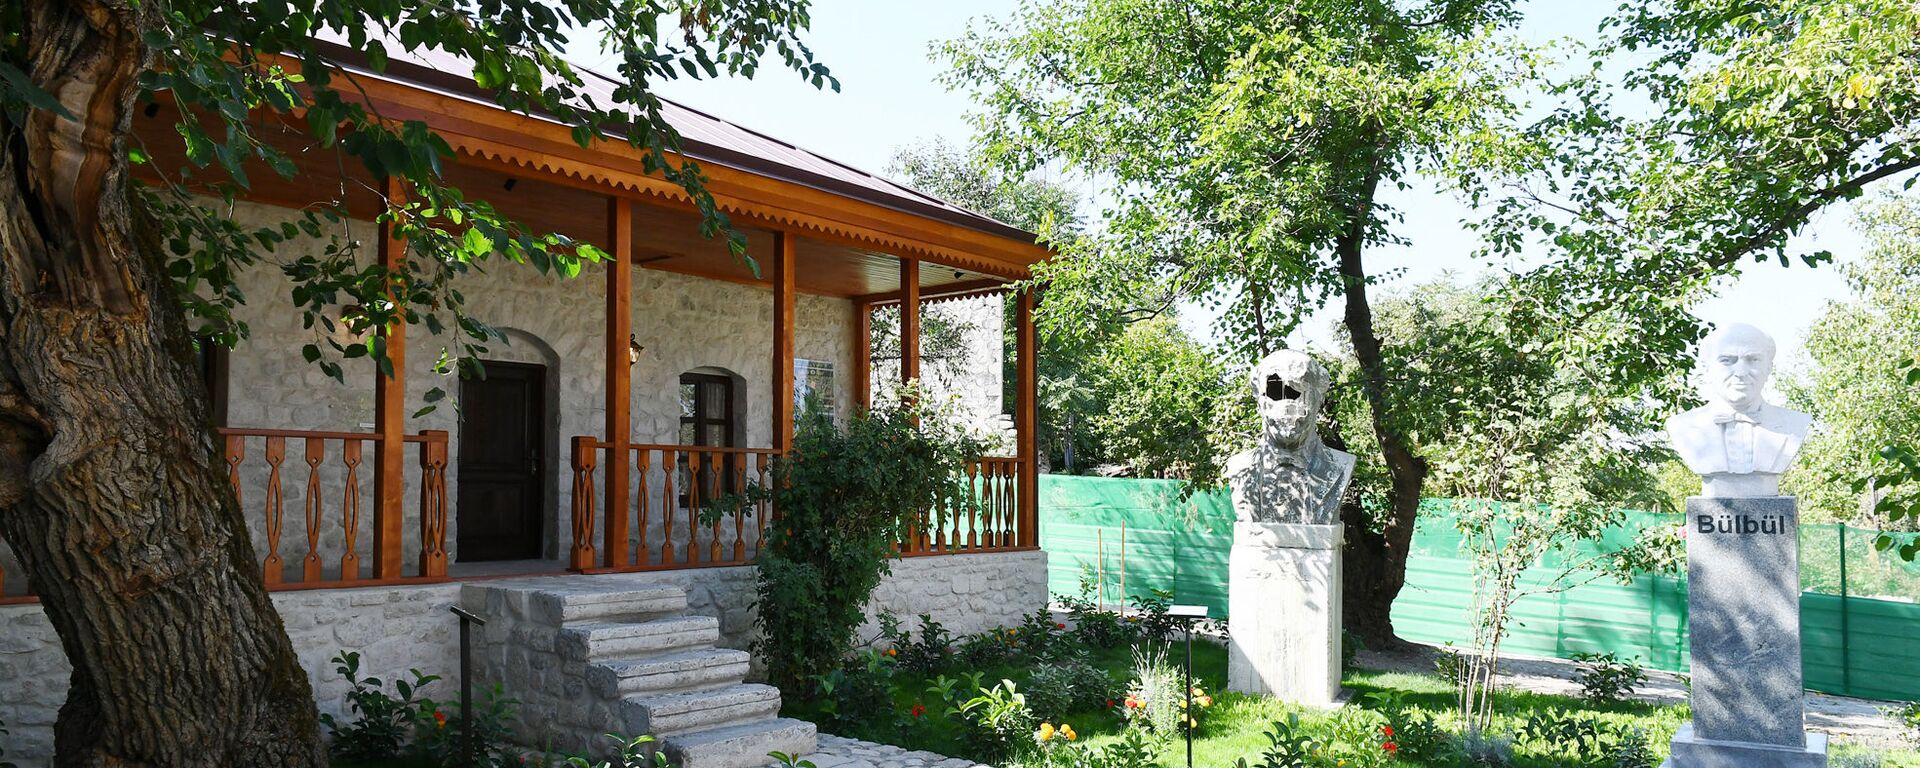  Şuşada Bülbülün ev-muzeyi - Sputnik Азербайджан, 1920, 31.08.2021